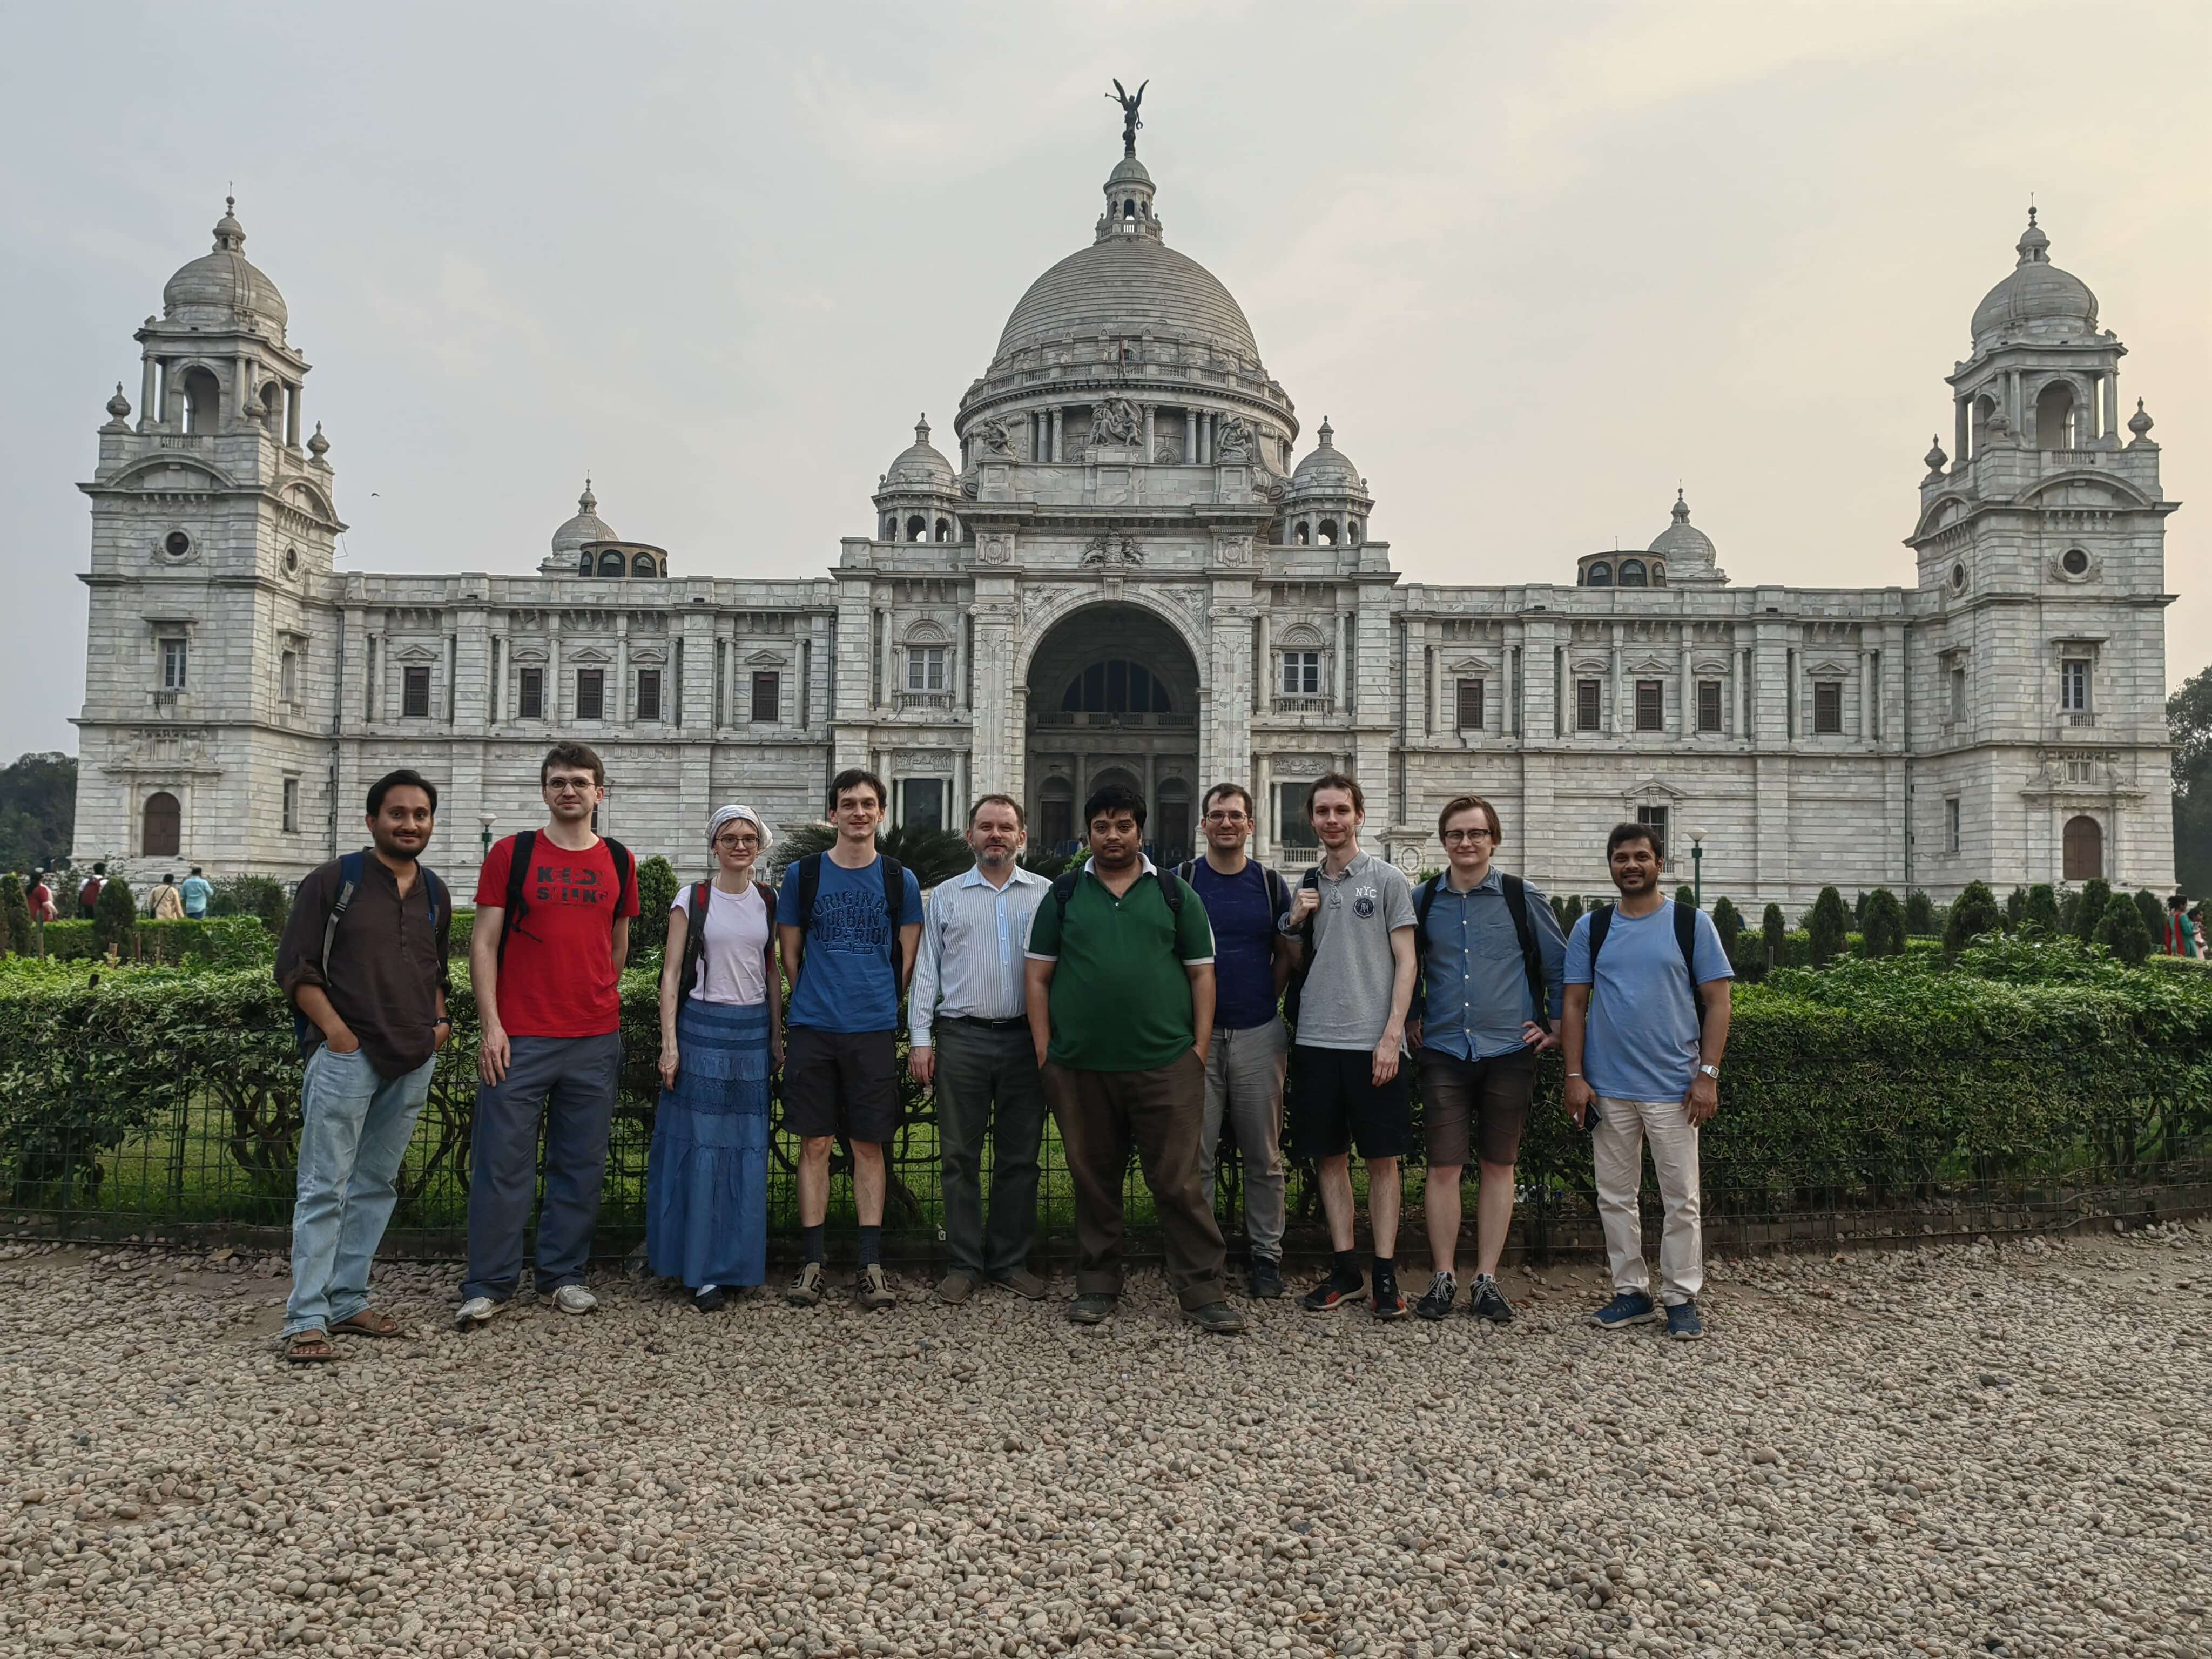 Сотрудники лаборатории на семинаре "Affine Spaces, Algebraic Group Actions, and LNDs", г. Калькутта, Индия, март 2023